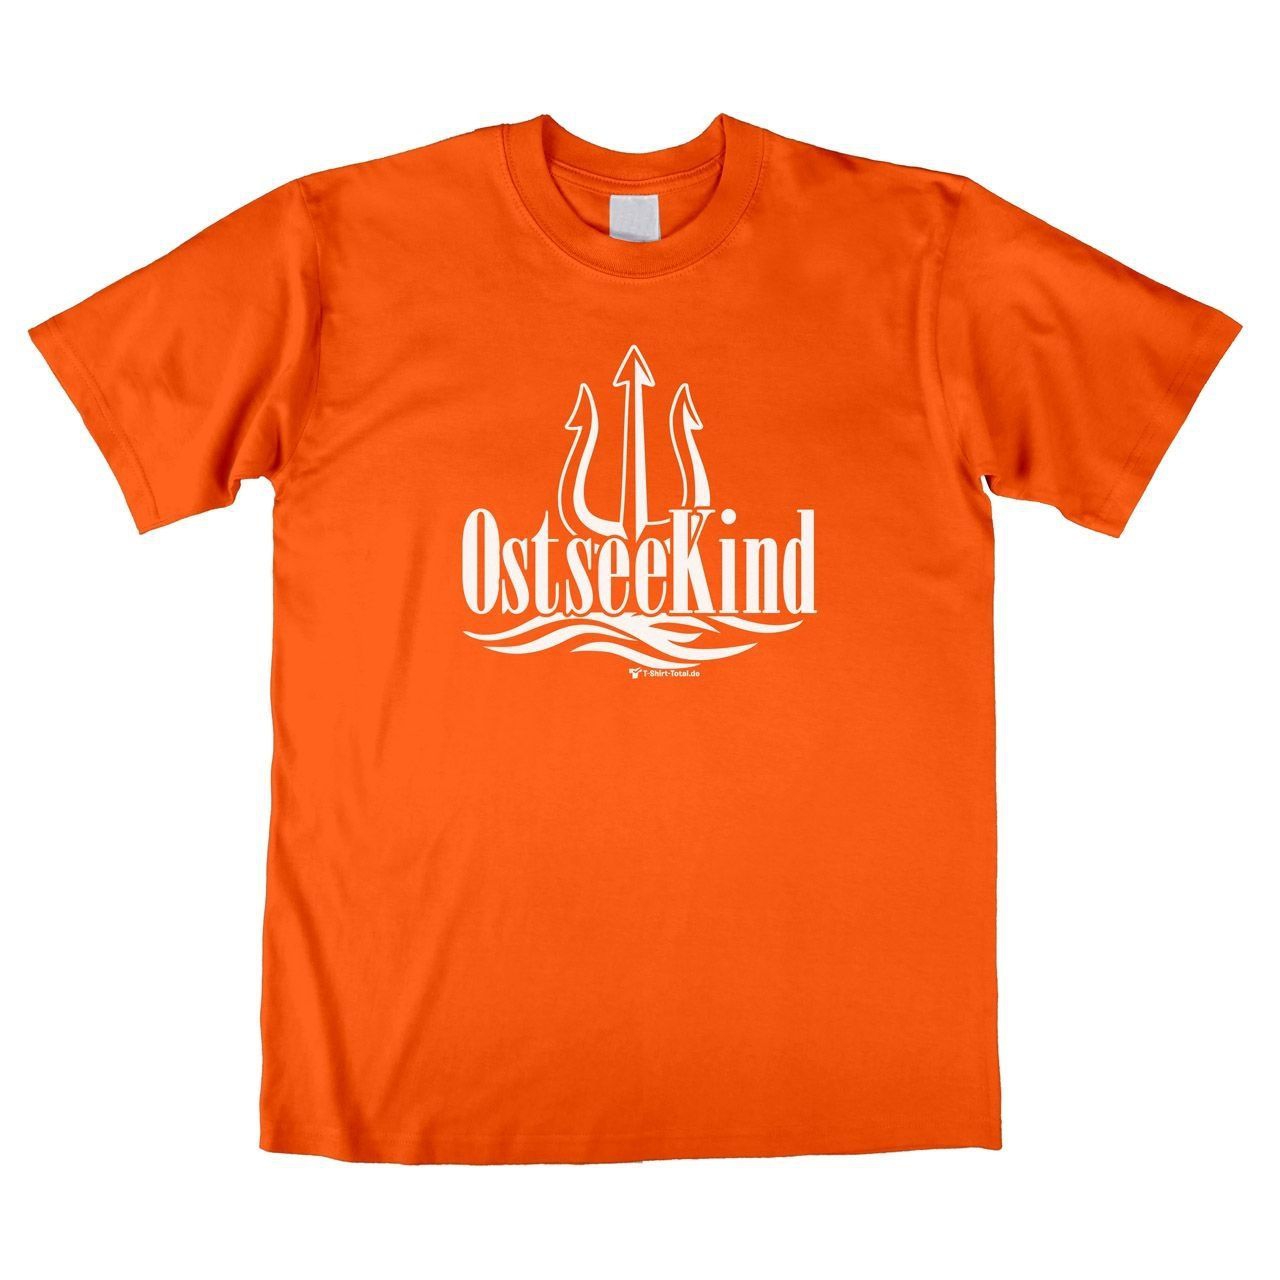 Ostsee Kind (für Erwachsene) Unisex T-Shirt orange Large